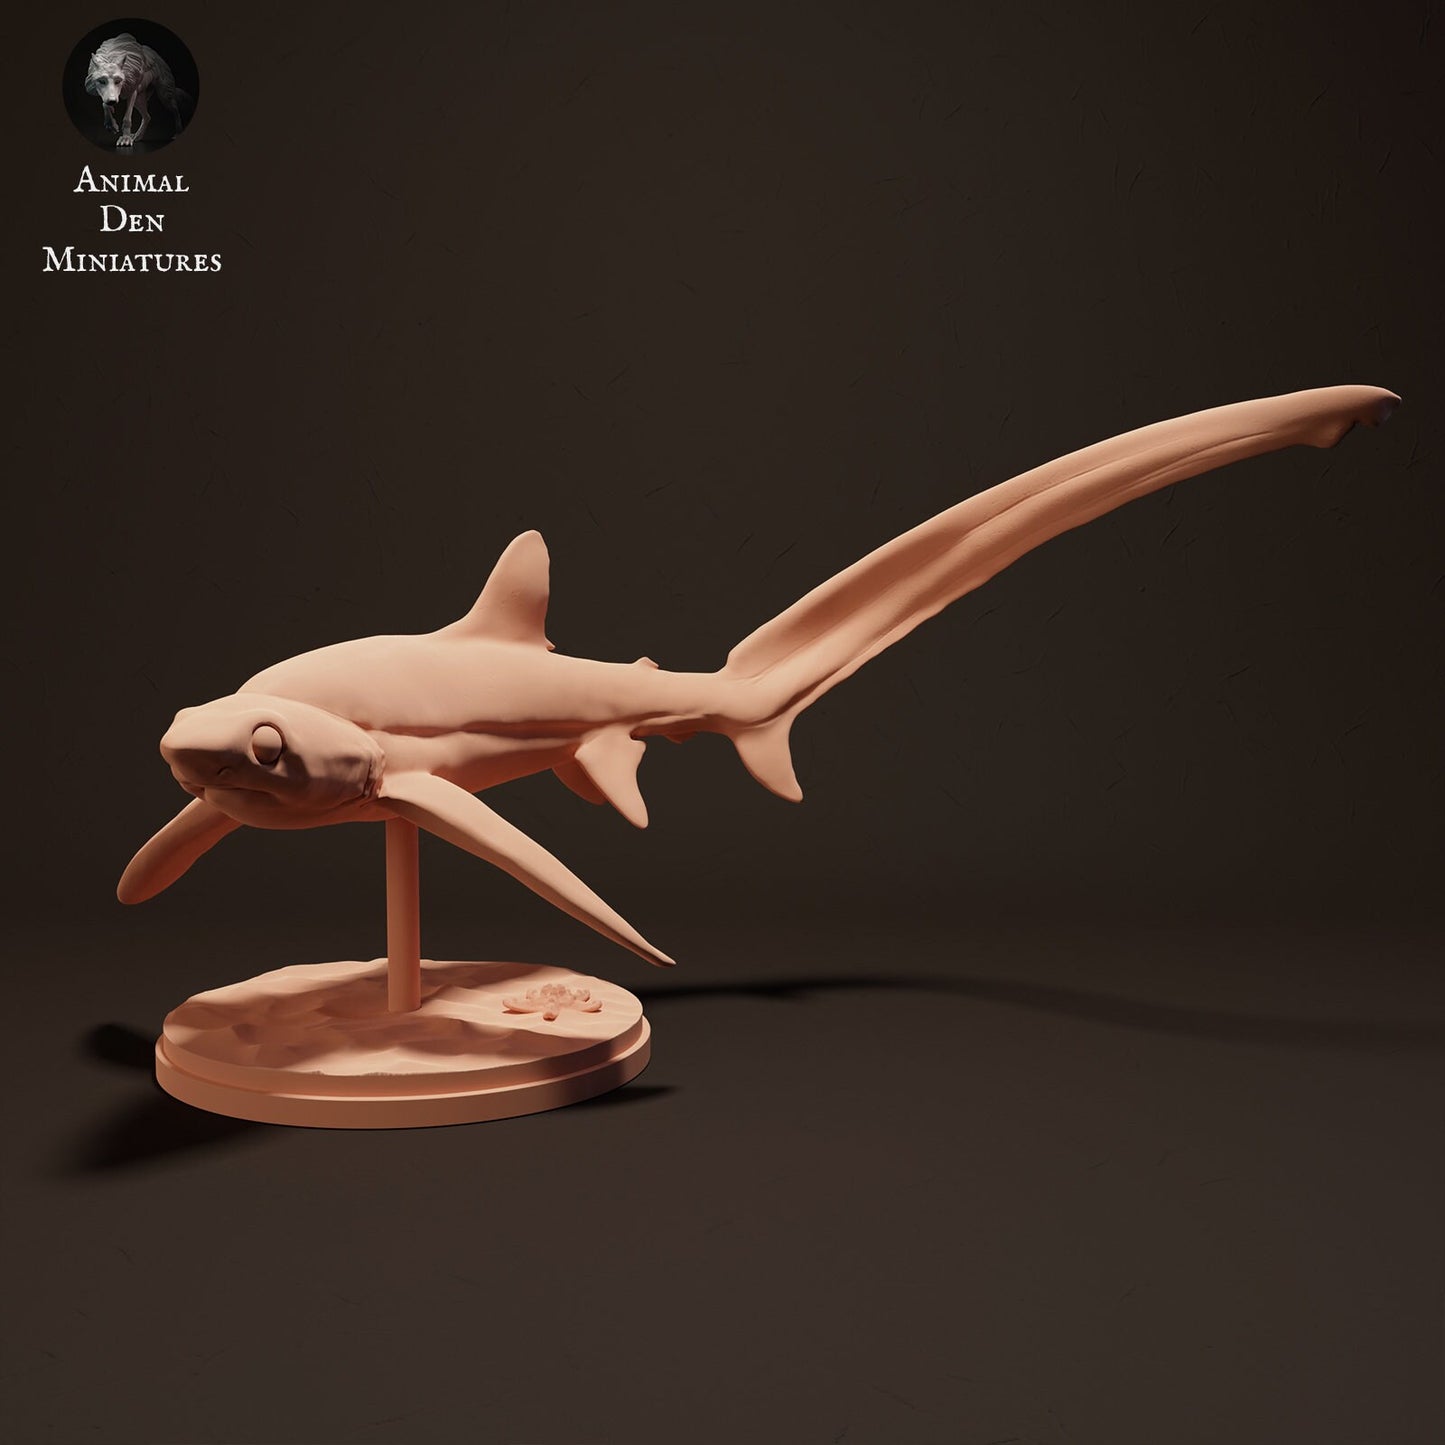 Big Eye Thresher Shark 1:24 scale by Animal Den | Please Read Description